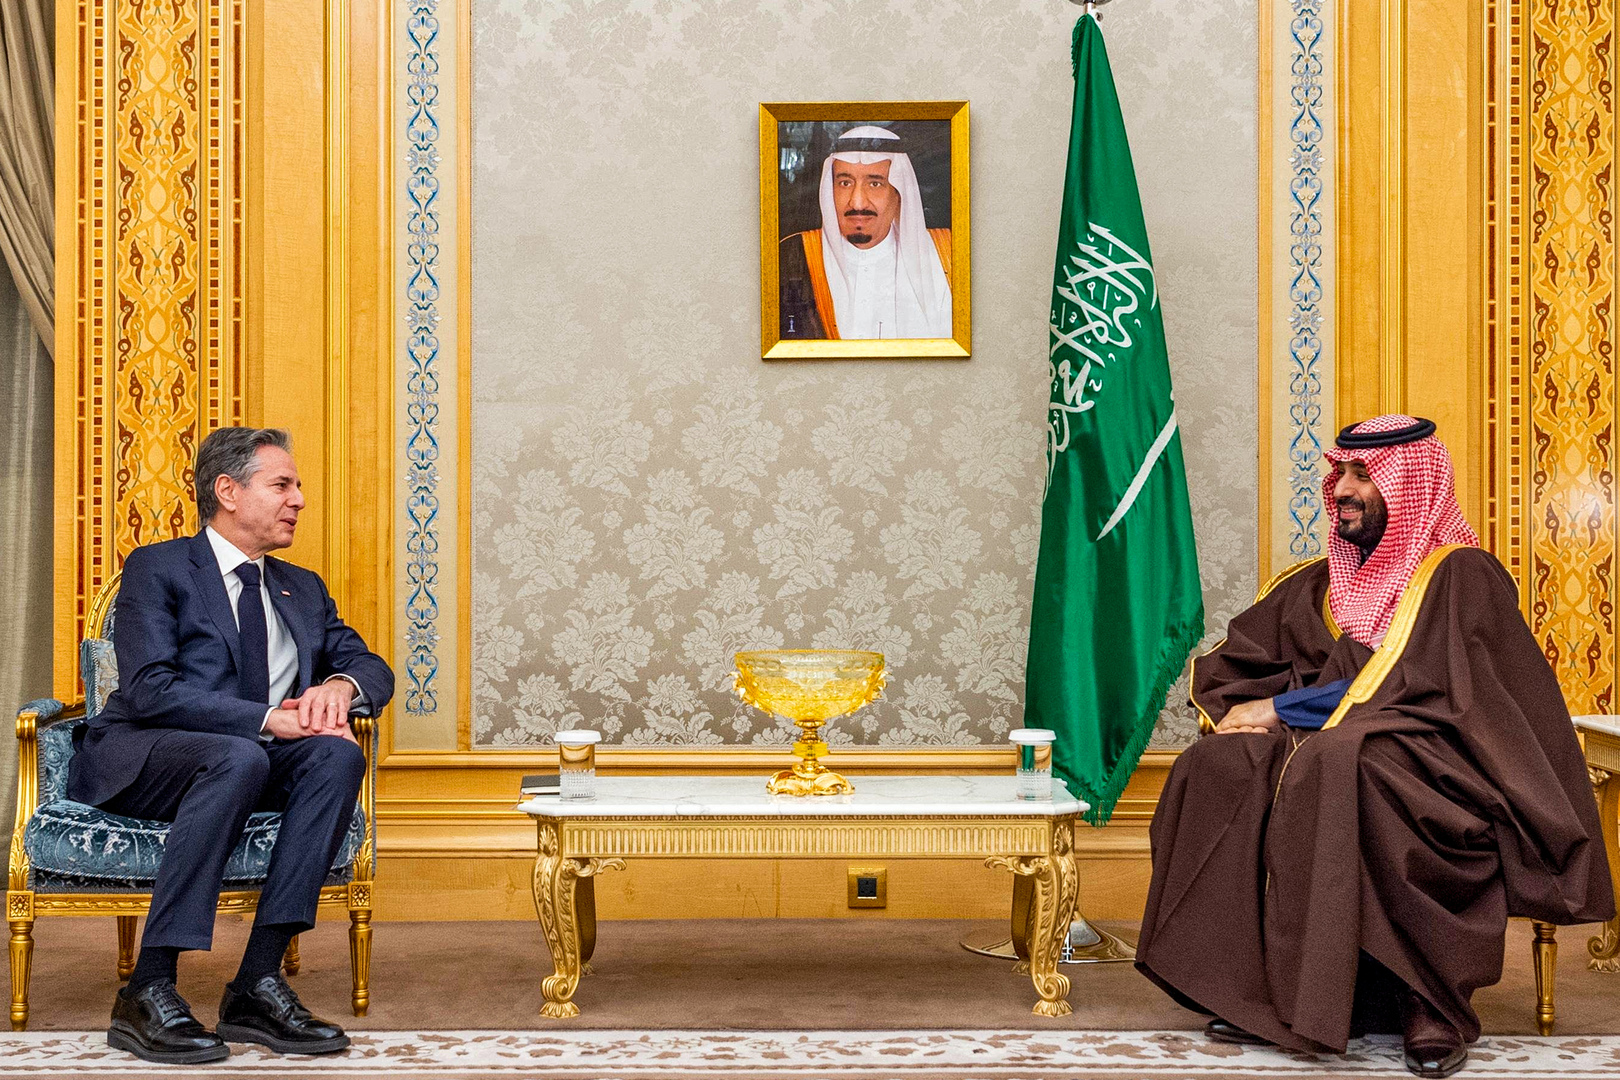 الخارجية الأمريكية تصدر بيانا بشأن مباحثات الأمير محمد بن سلمان وأنتوني بلينكن في الرياض